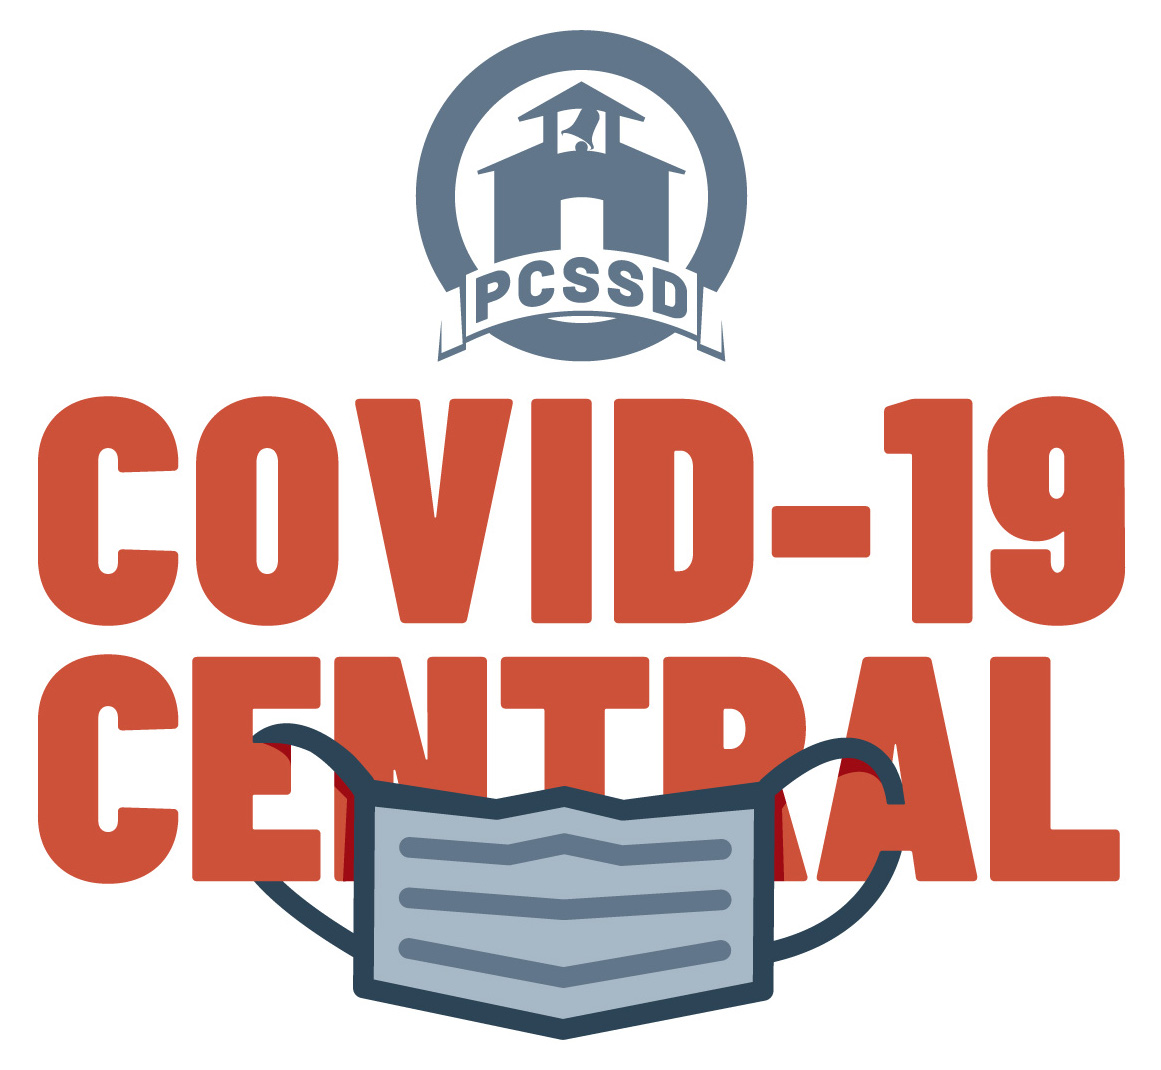 COVID-19 CENTRAL